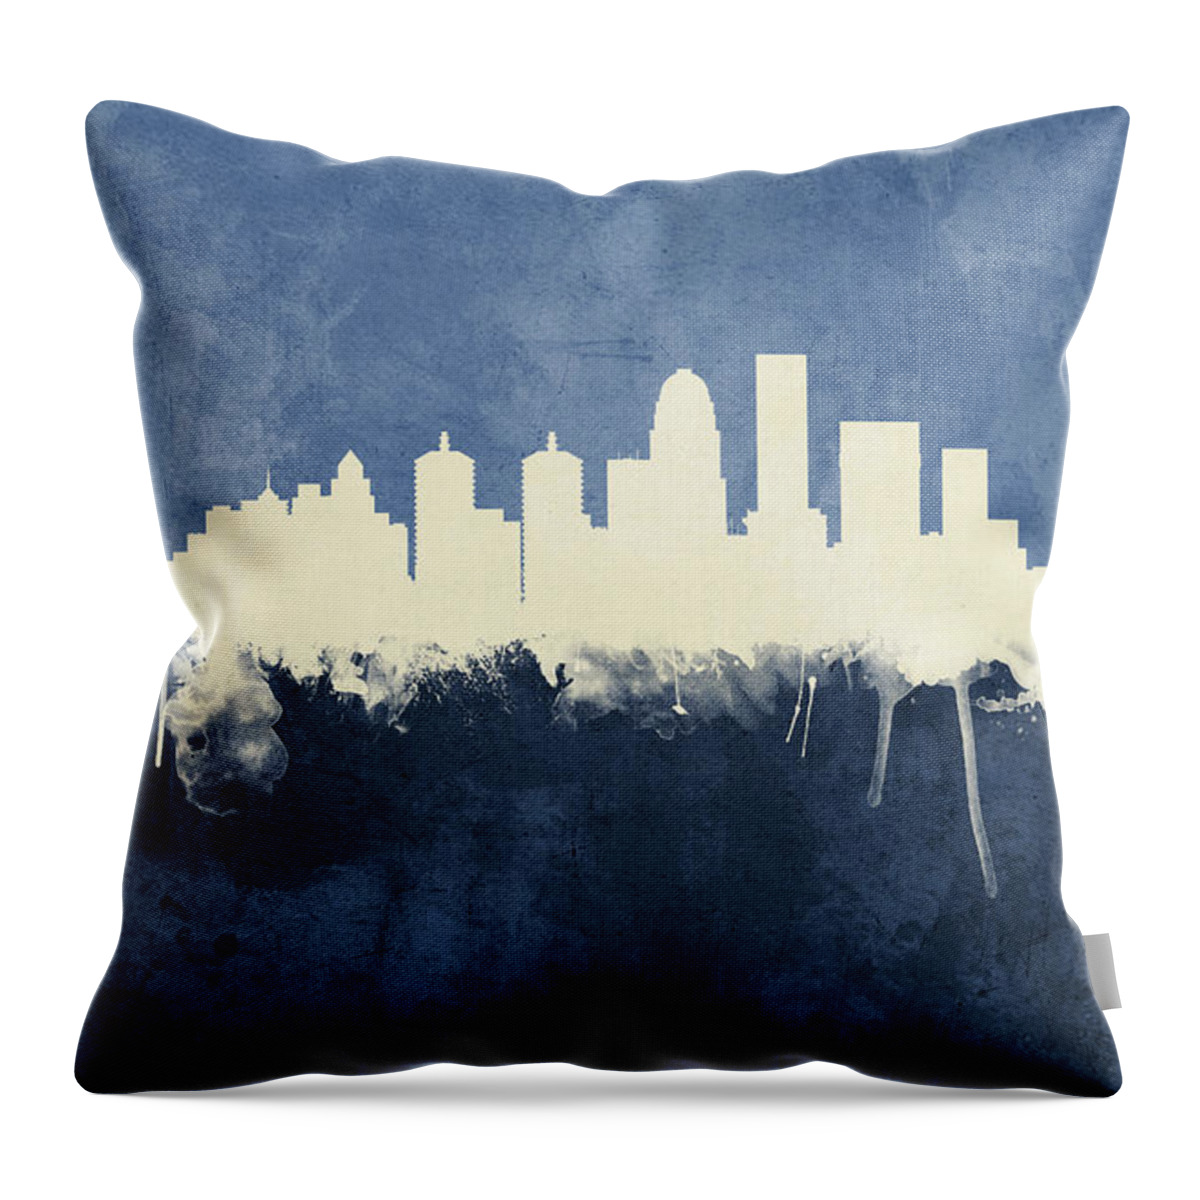 Louisville Throw Pillow featuring the digital art Louisville Kentucky City Skyline by Michael Tompsett